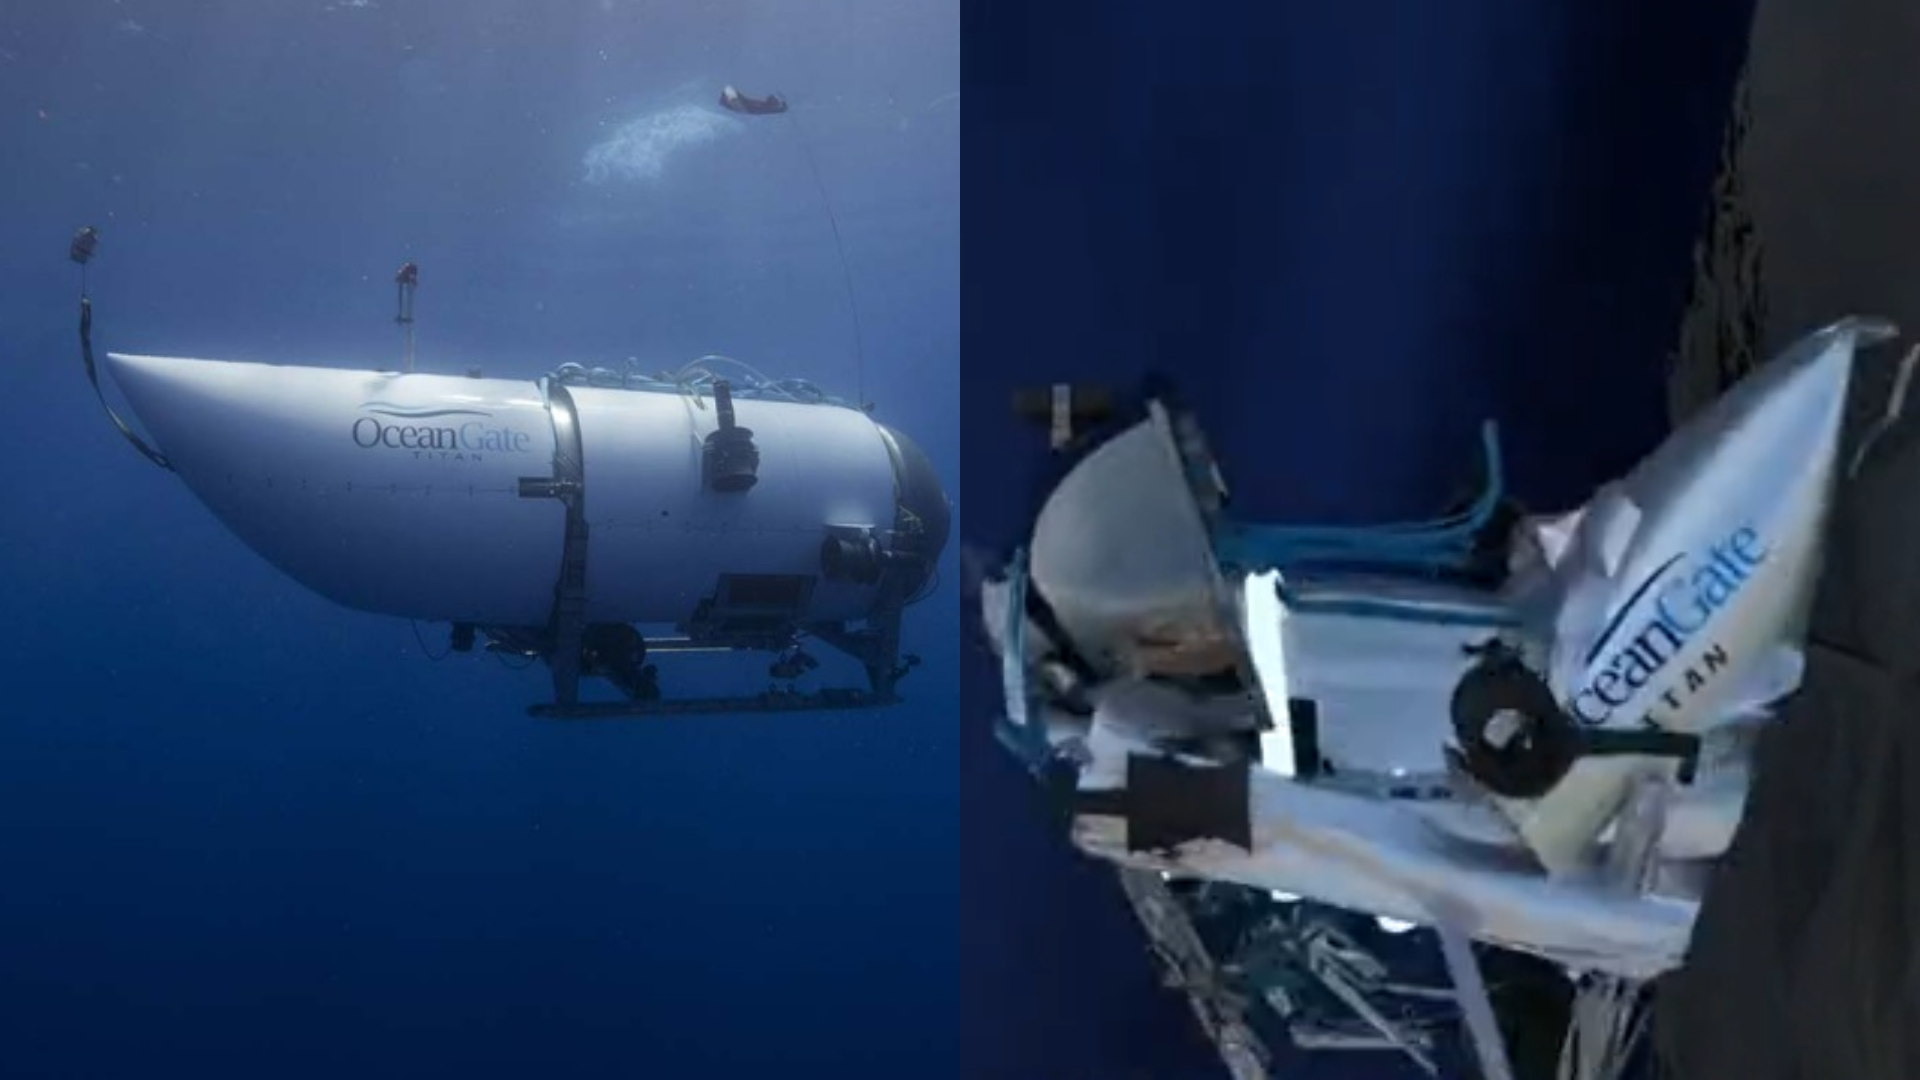 Especialistas apontam o que pode ter causado a implosão de submarino, e vídeo simula tragédia